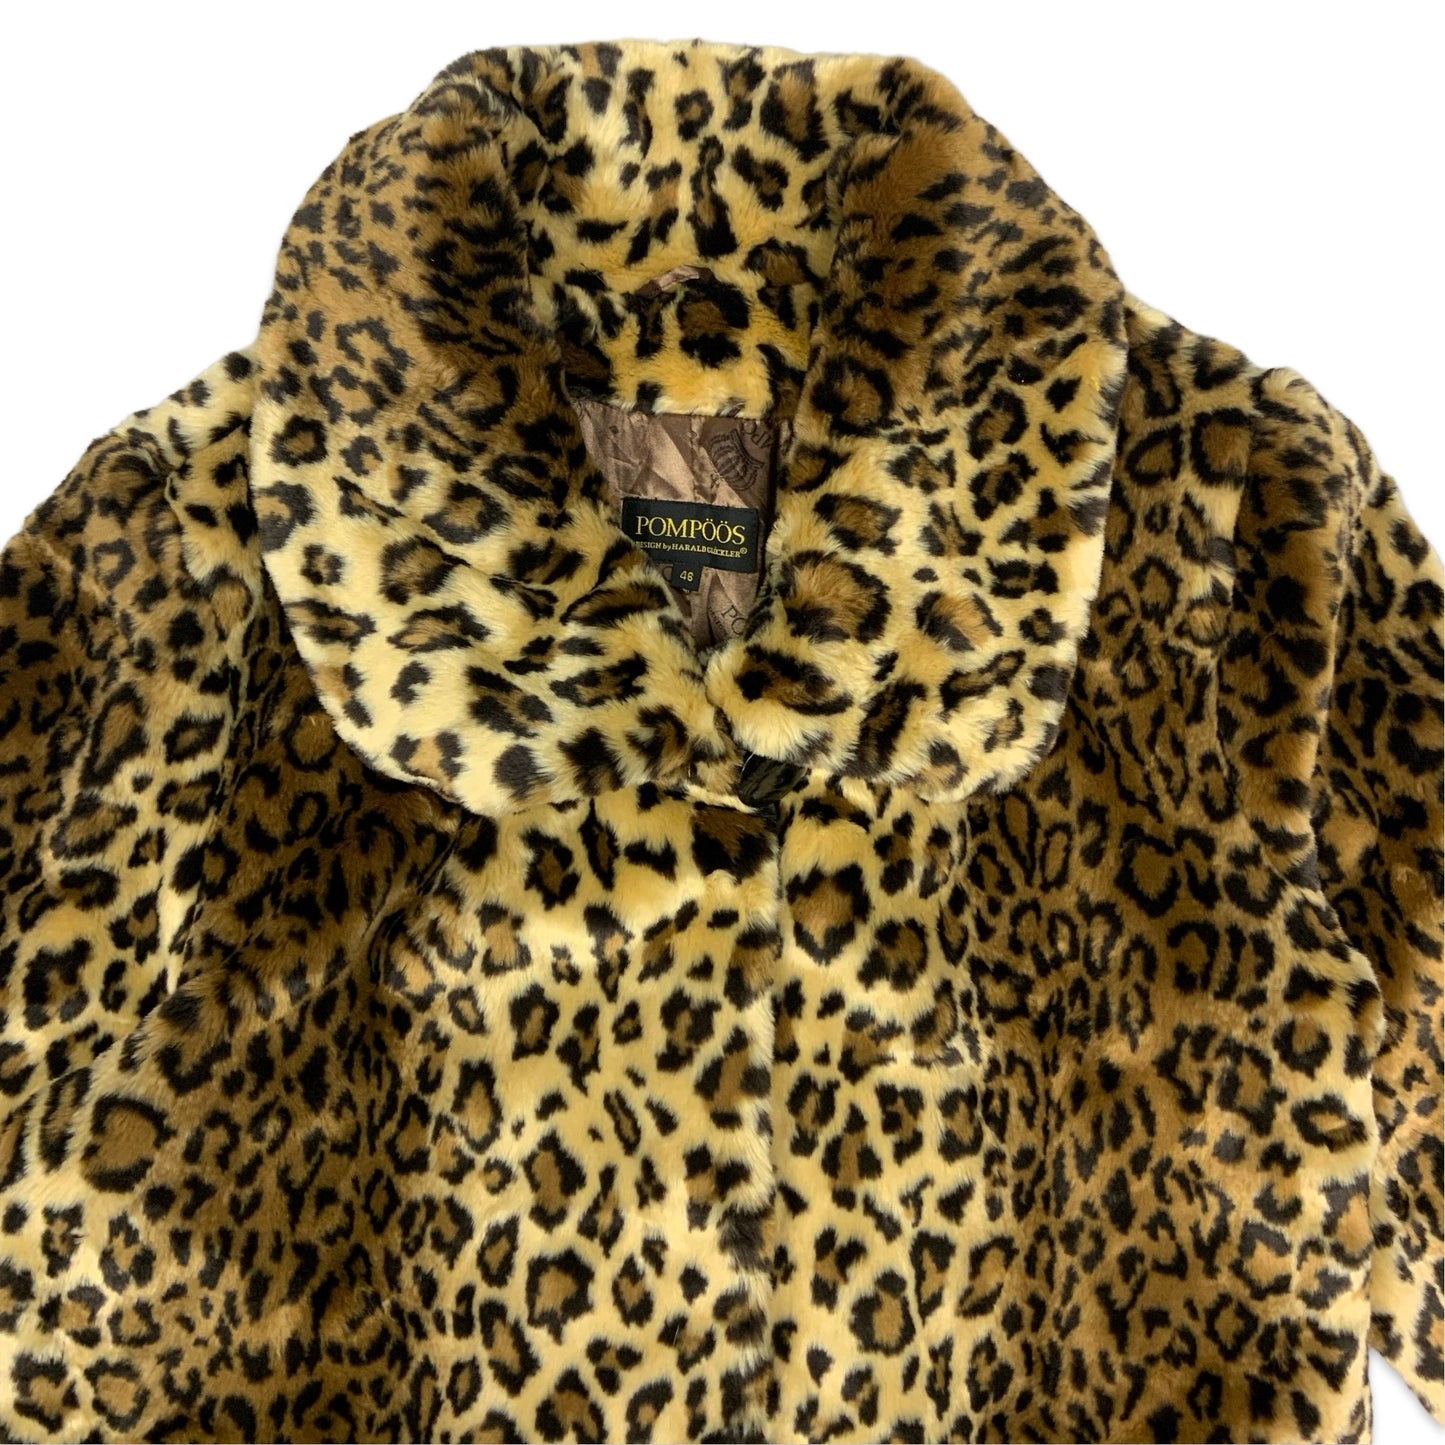 Vintage Leopard Print Faux Fur Long Coat 16 18